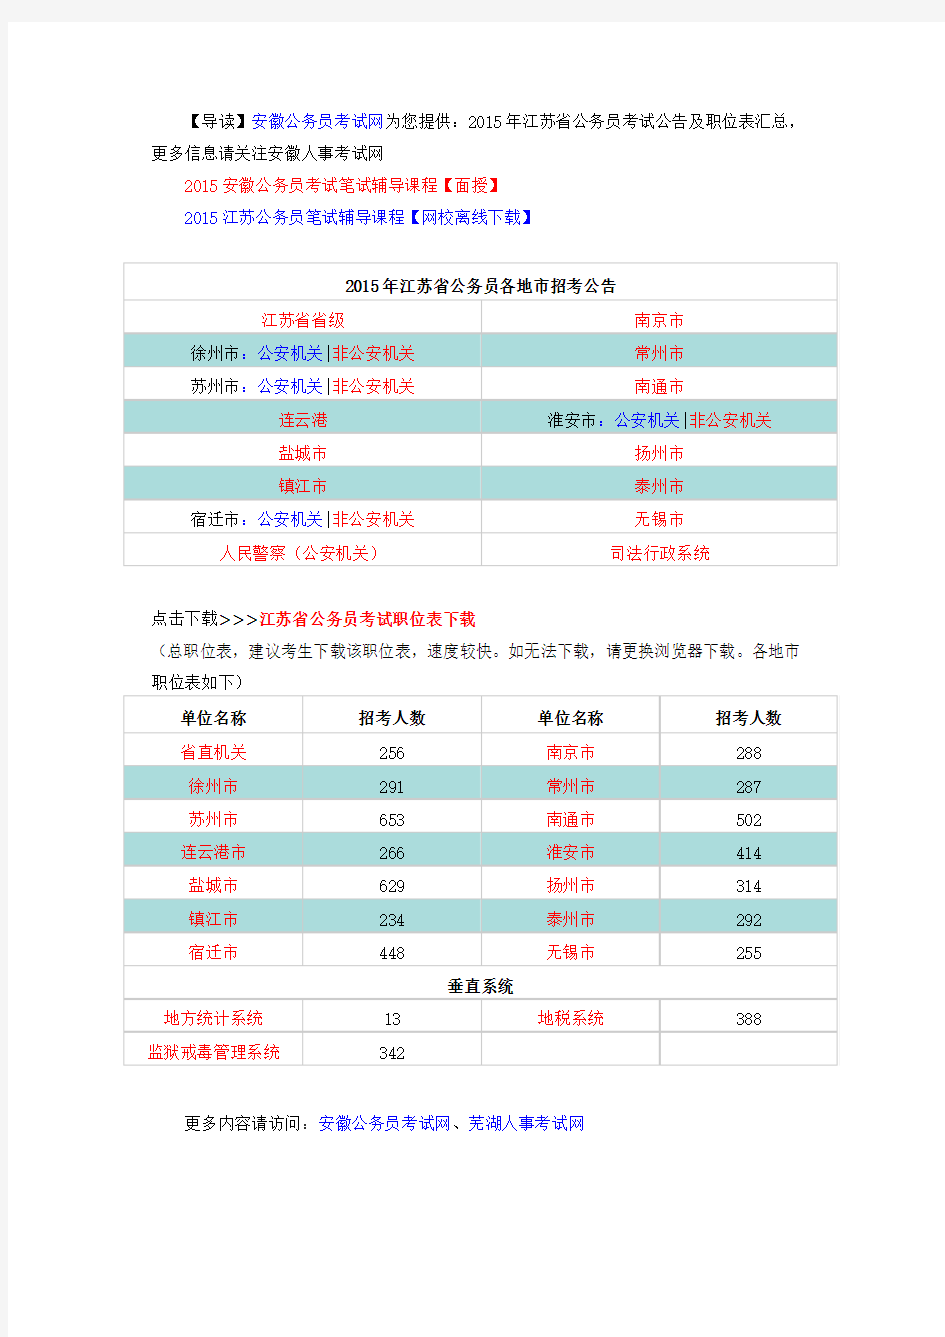 2015年江苏省公务员考试公告及职位表汇总